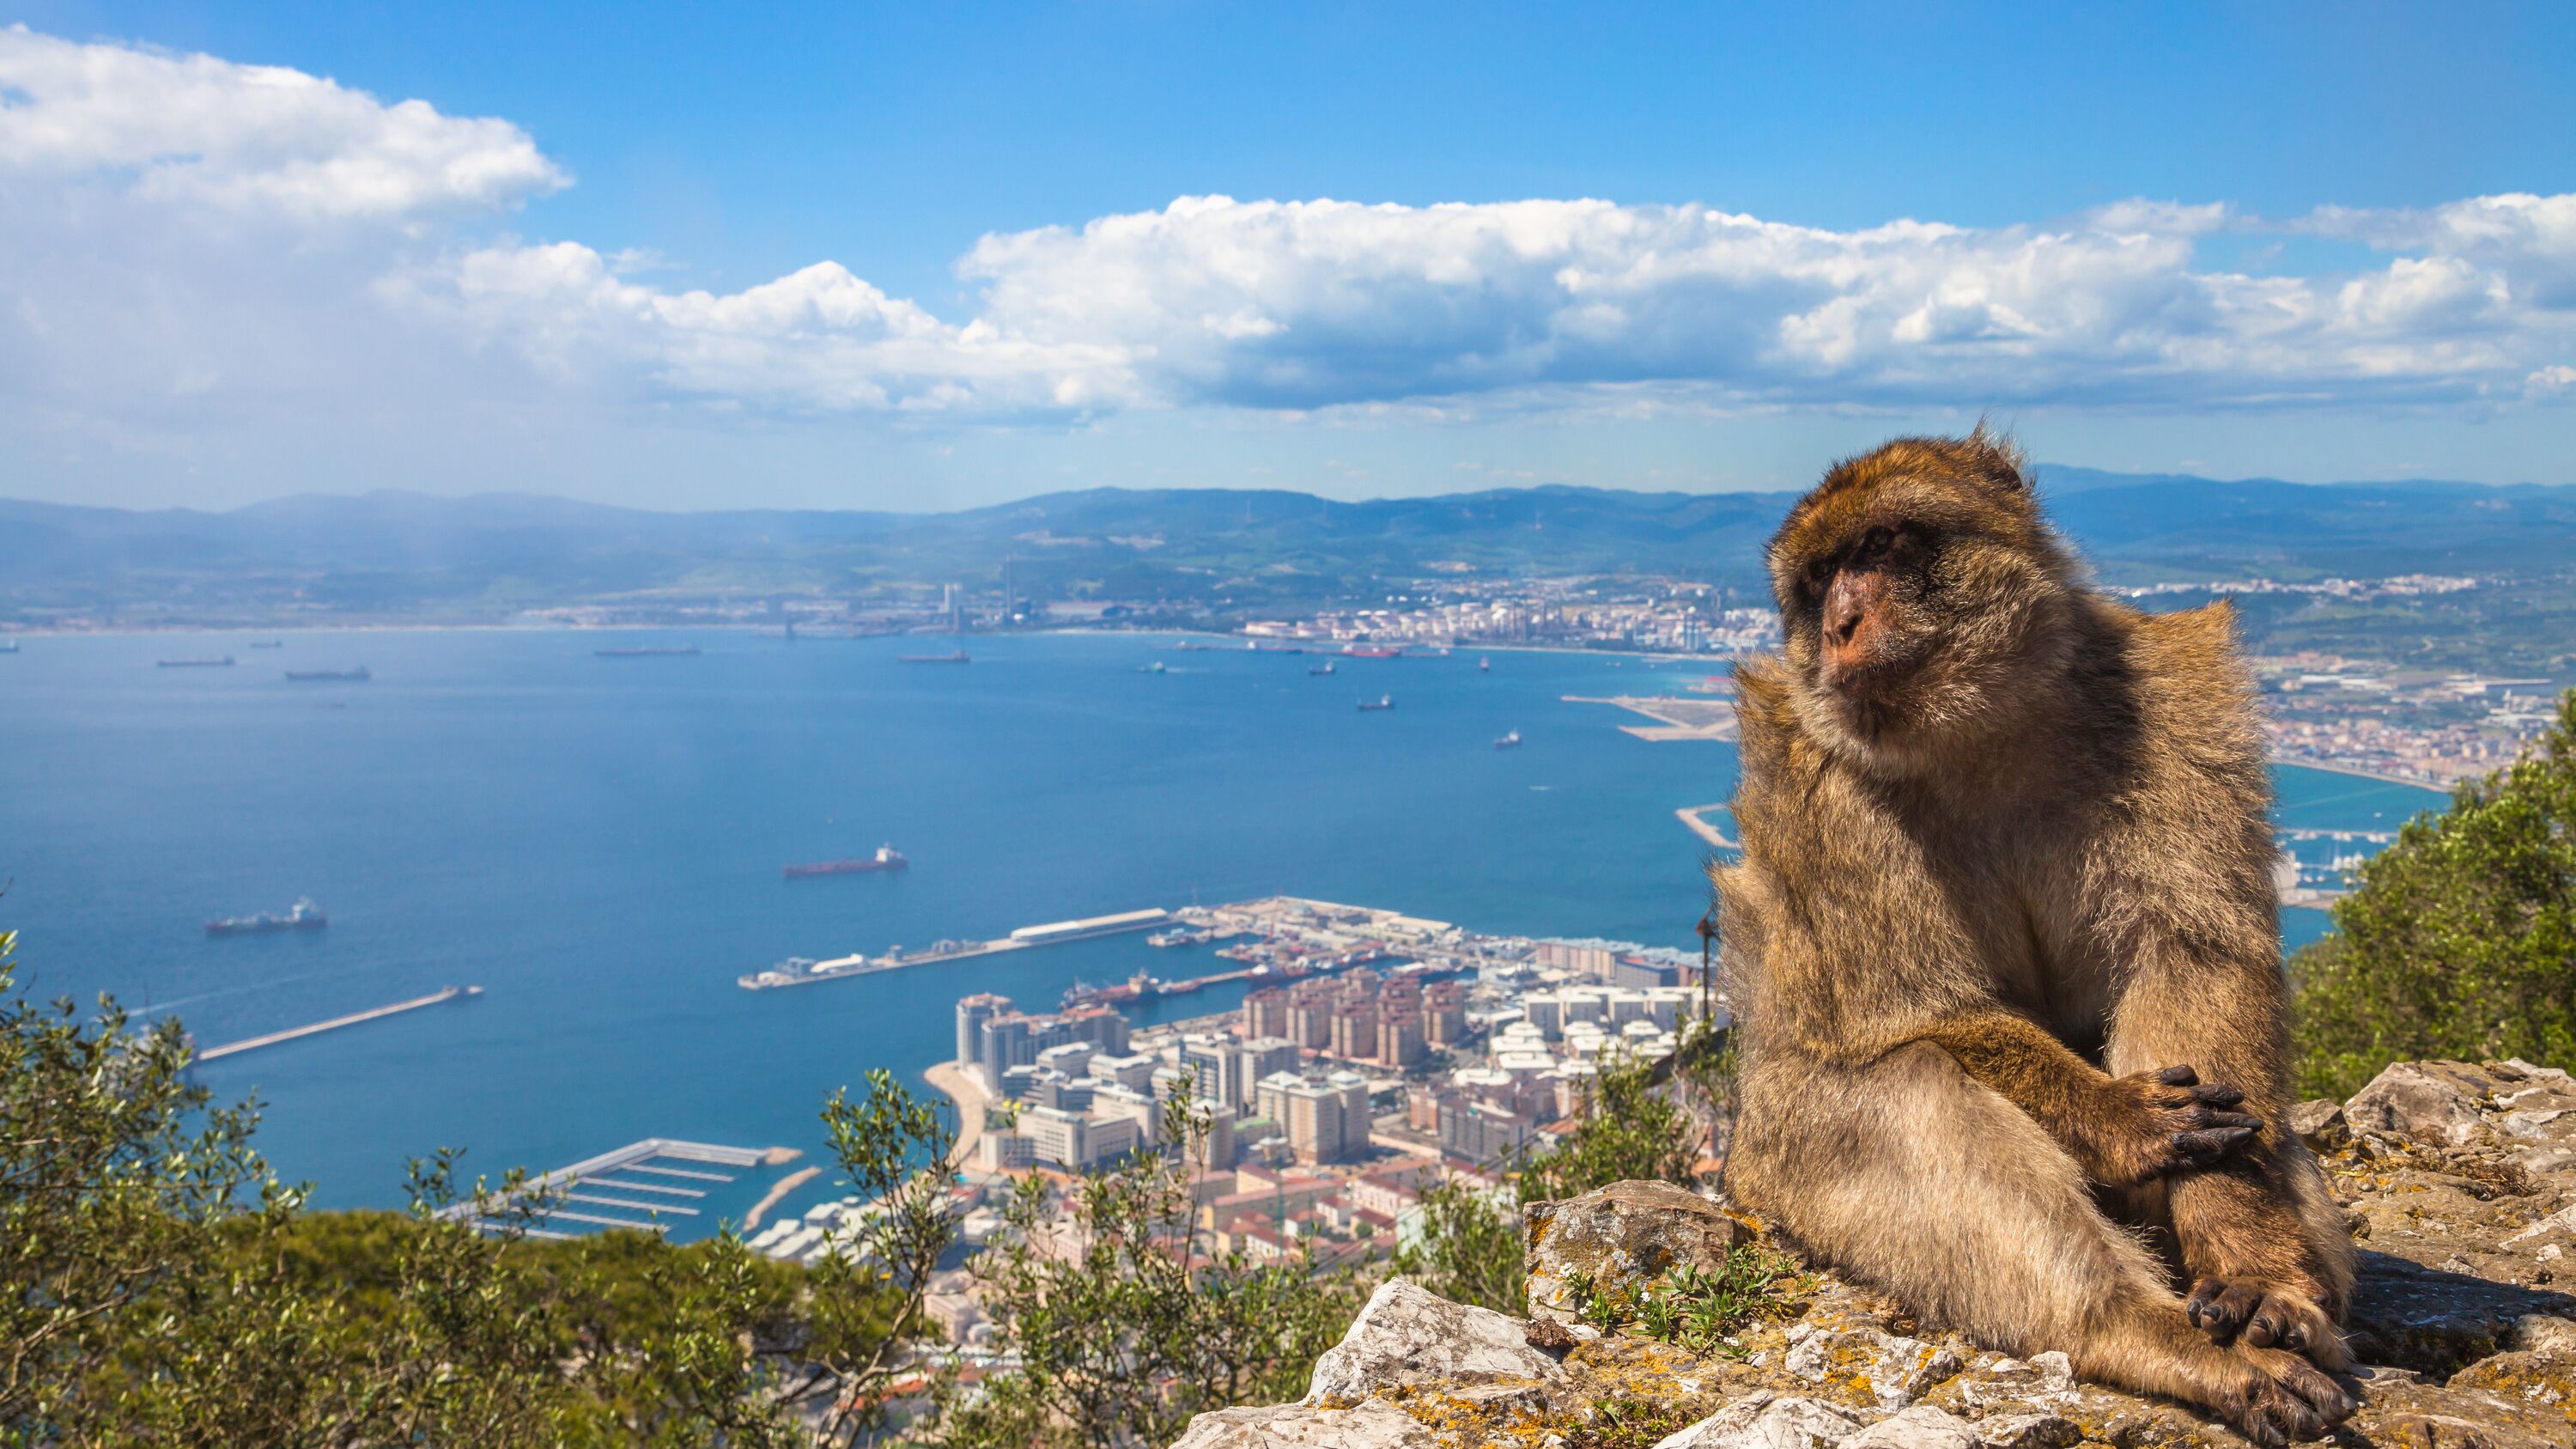 Vakantie Gibraltar? De mooiste Gibraltar reizen! » ANWB